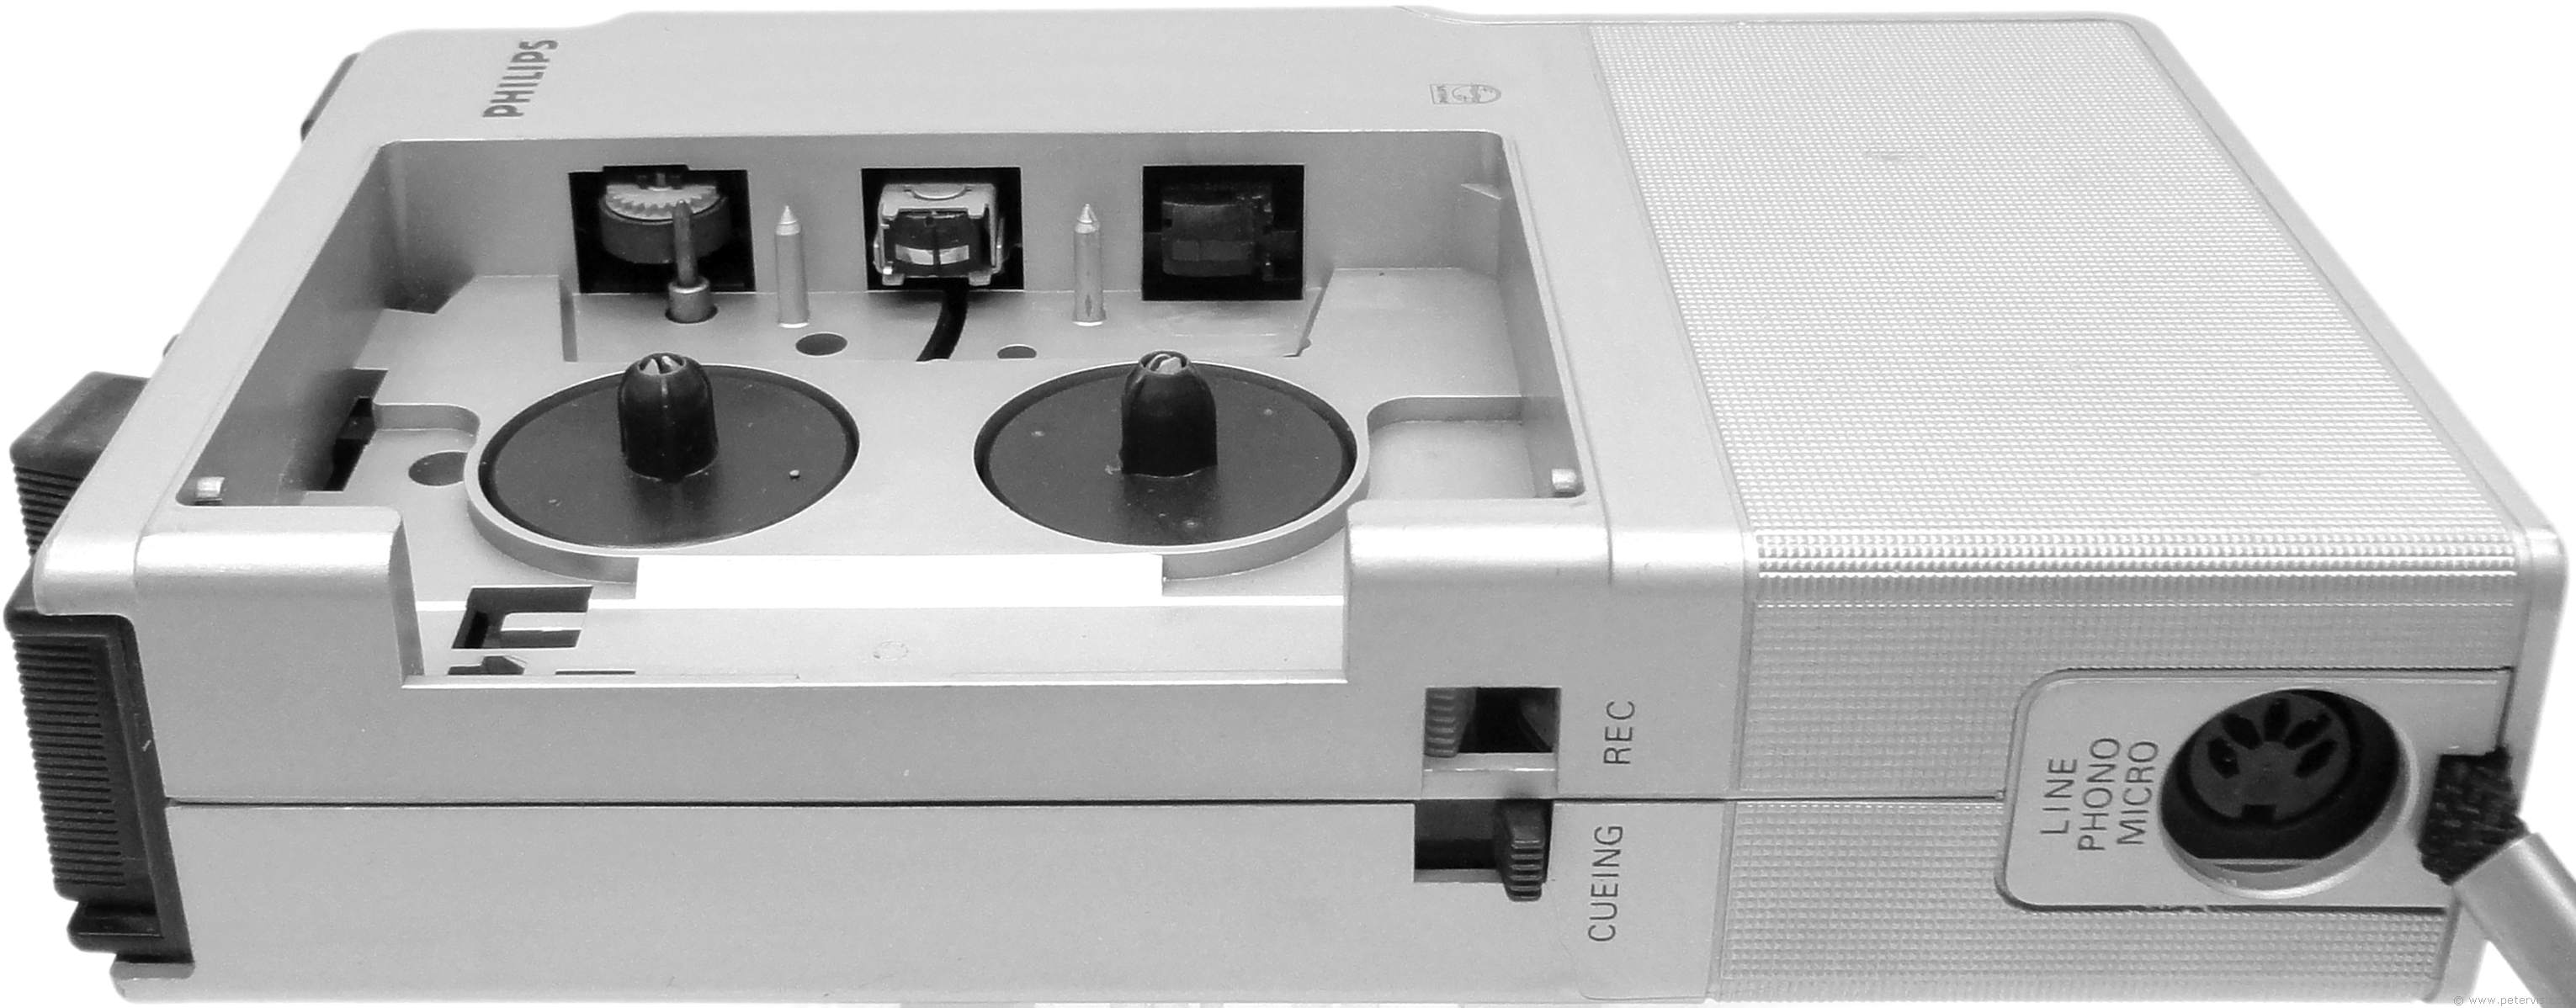 Cassette Compartment